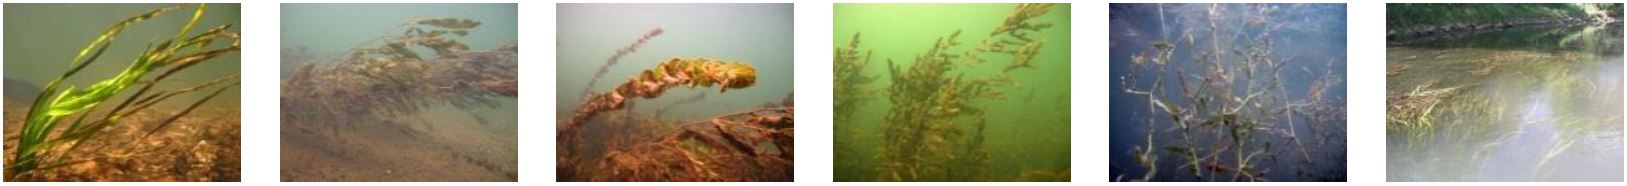 Die 6 Fotos zeigen unterschiedliche höhere Wasserpflanzen im Gewässer.